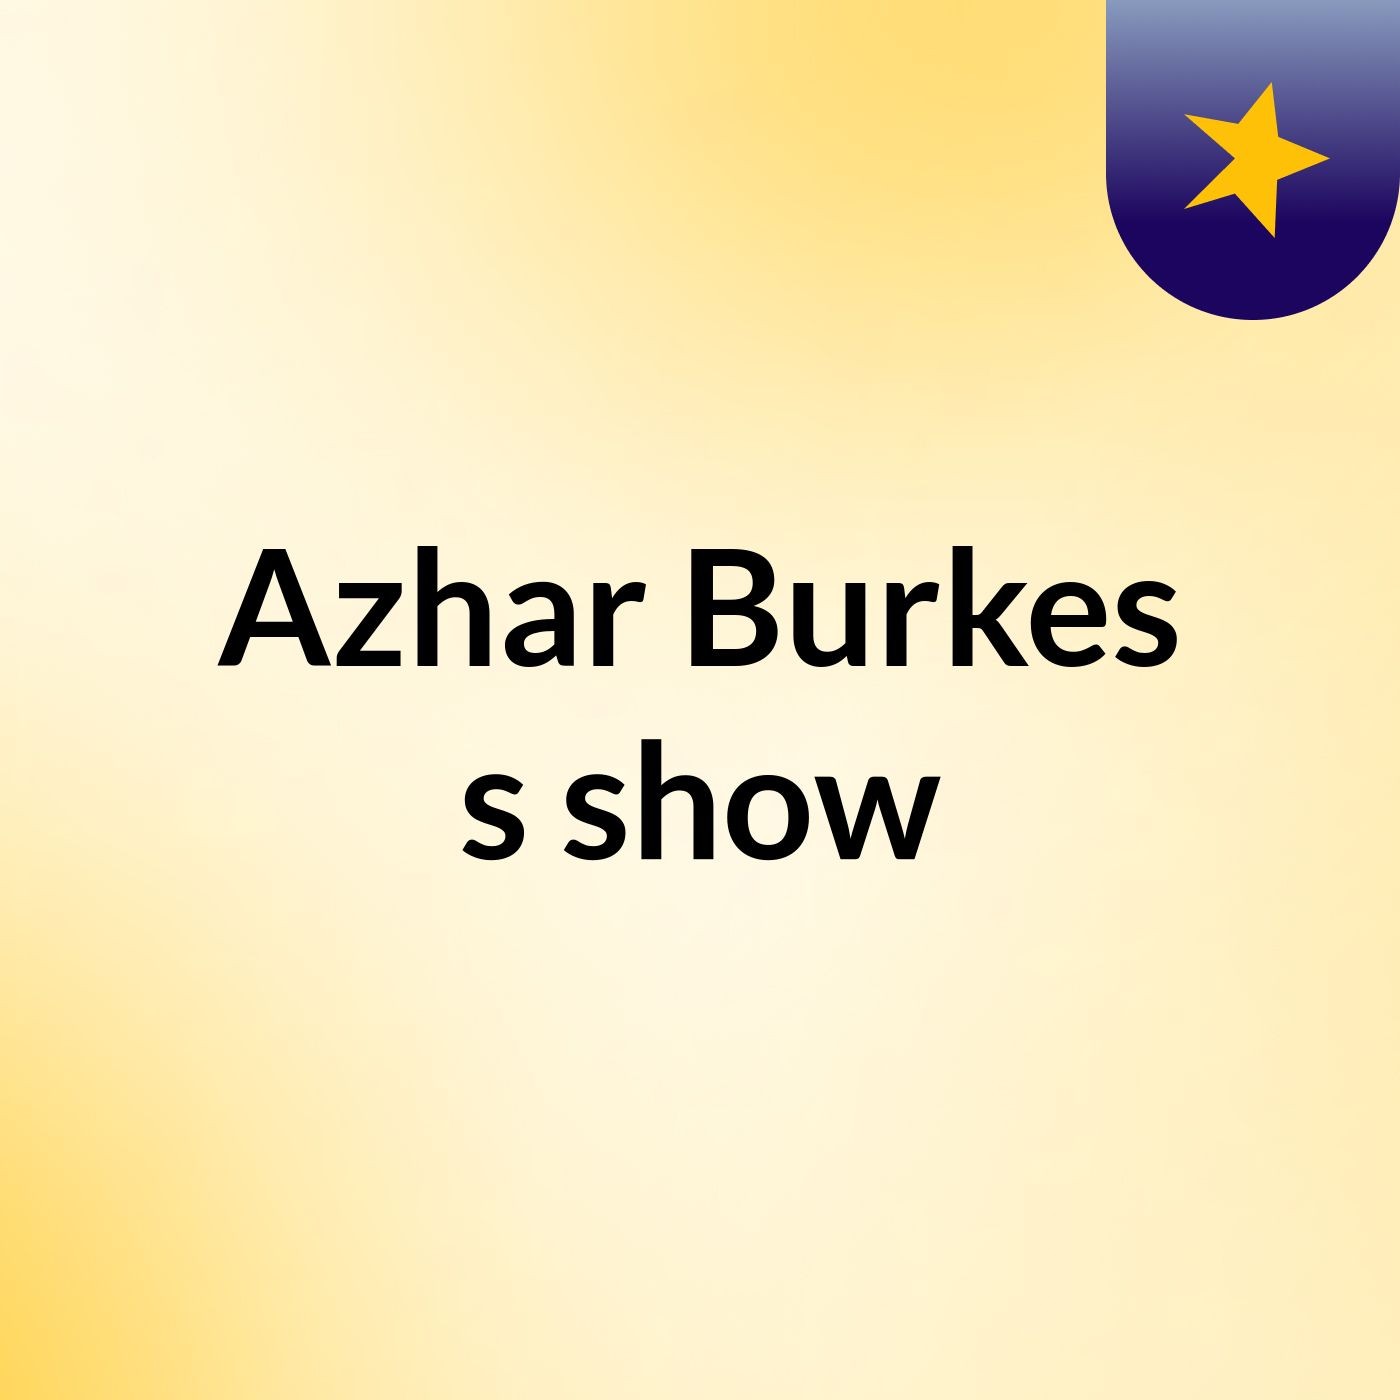 Episode 2 - Azhar Burkes's show